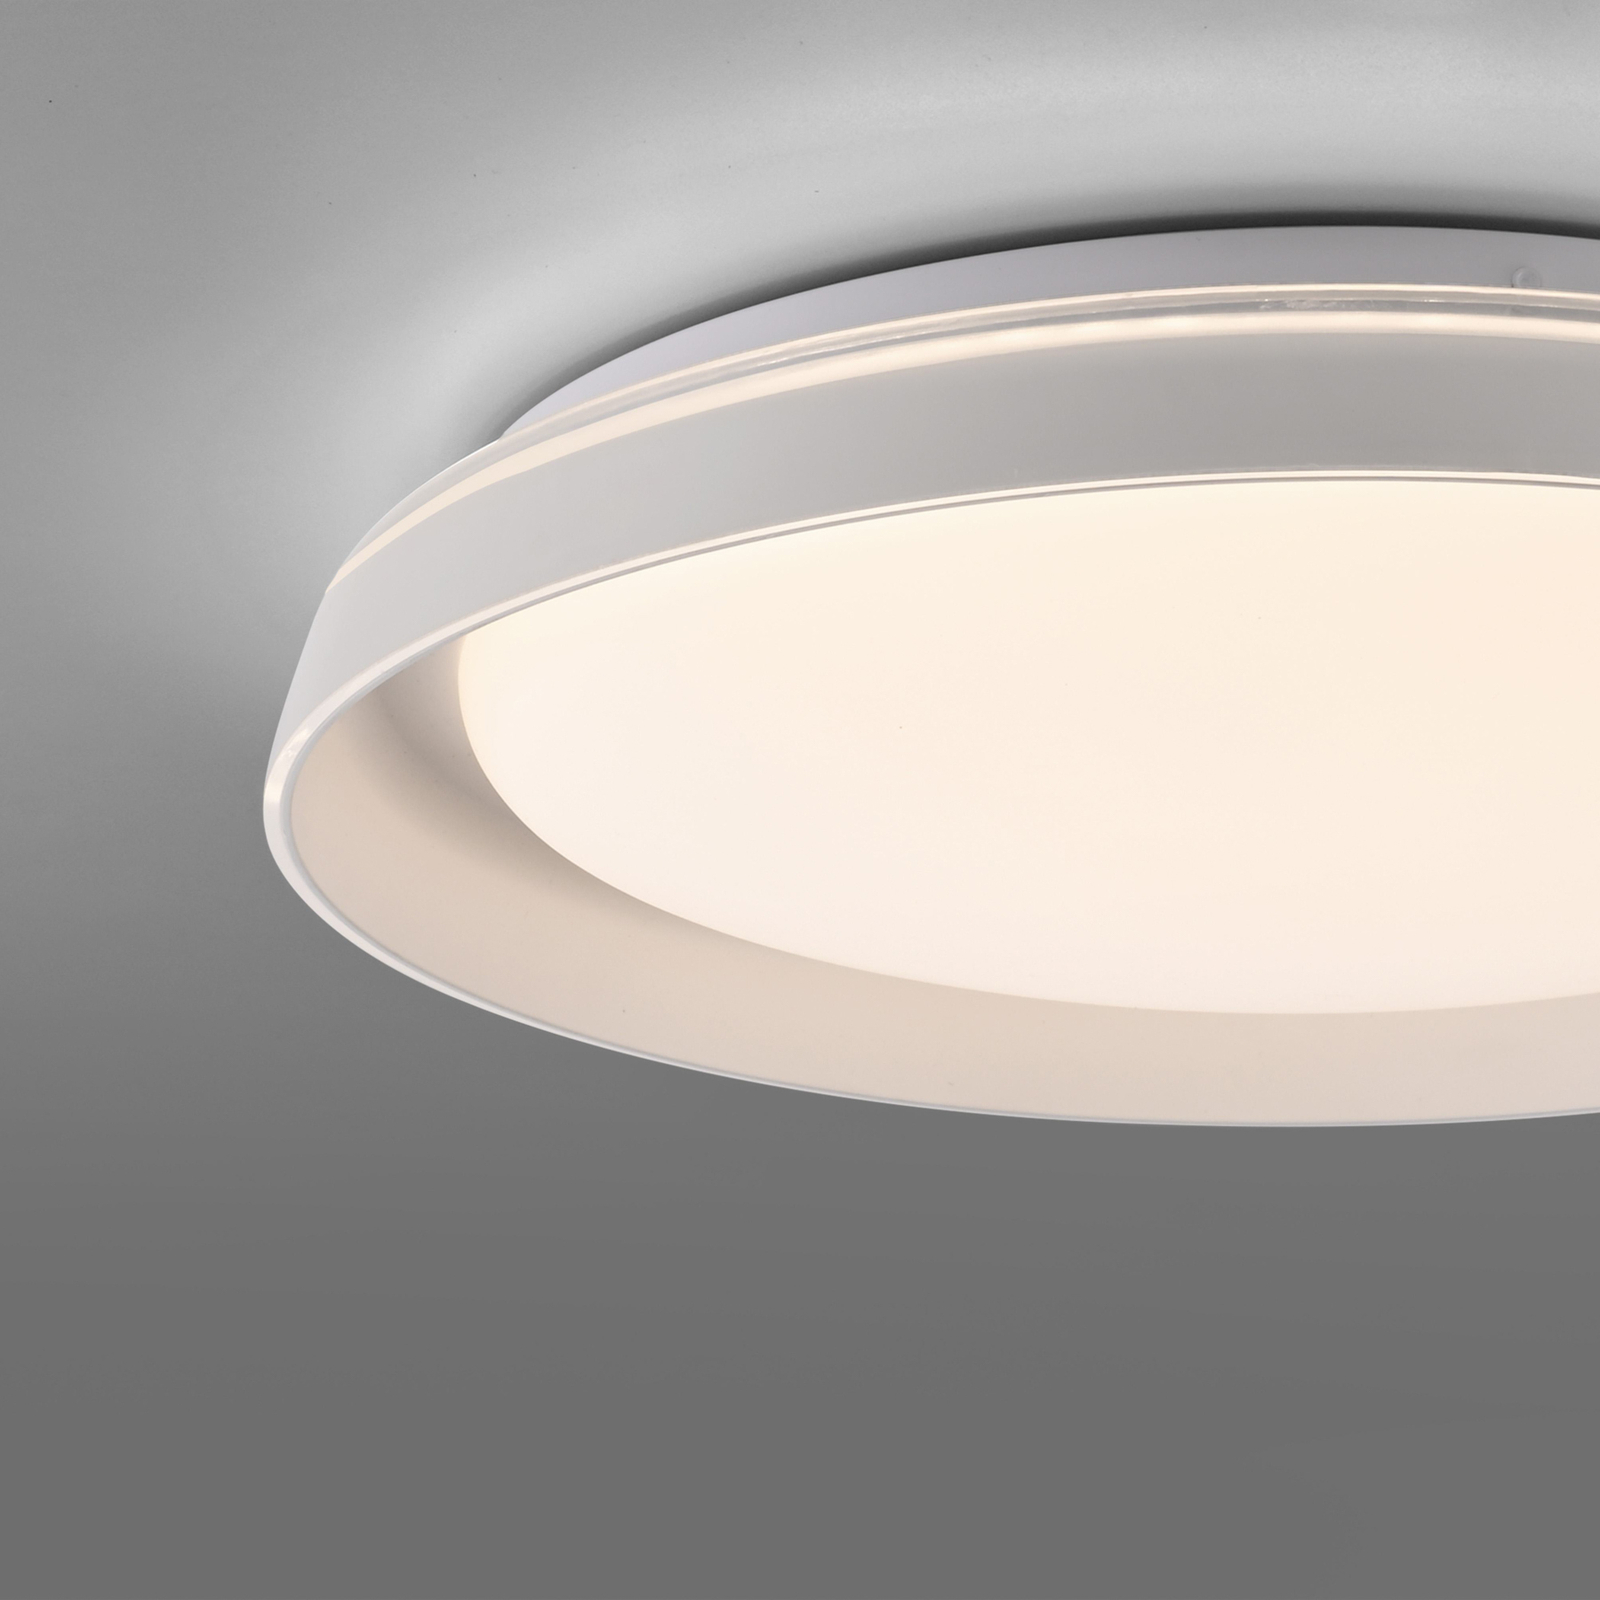 JUST LIGHT. Sati LED ceiling light, plastic, white